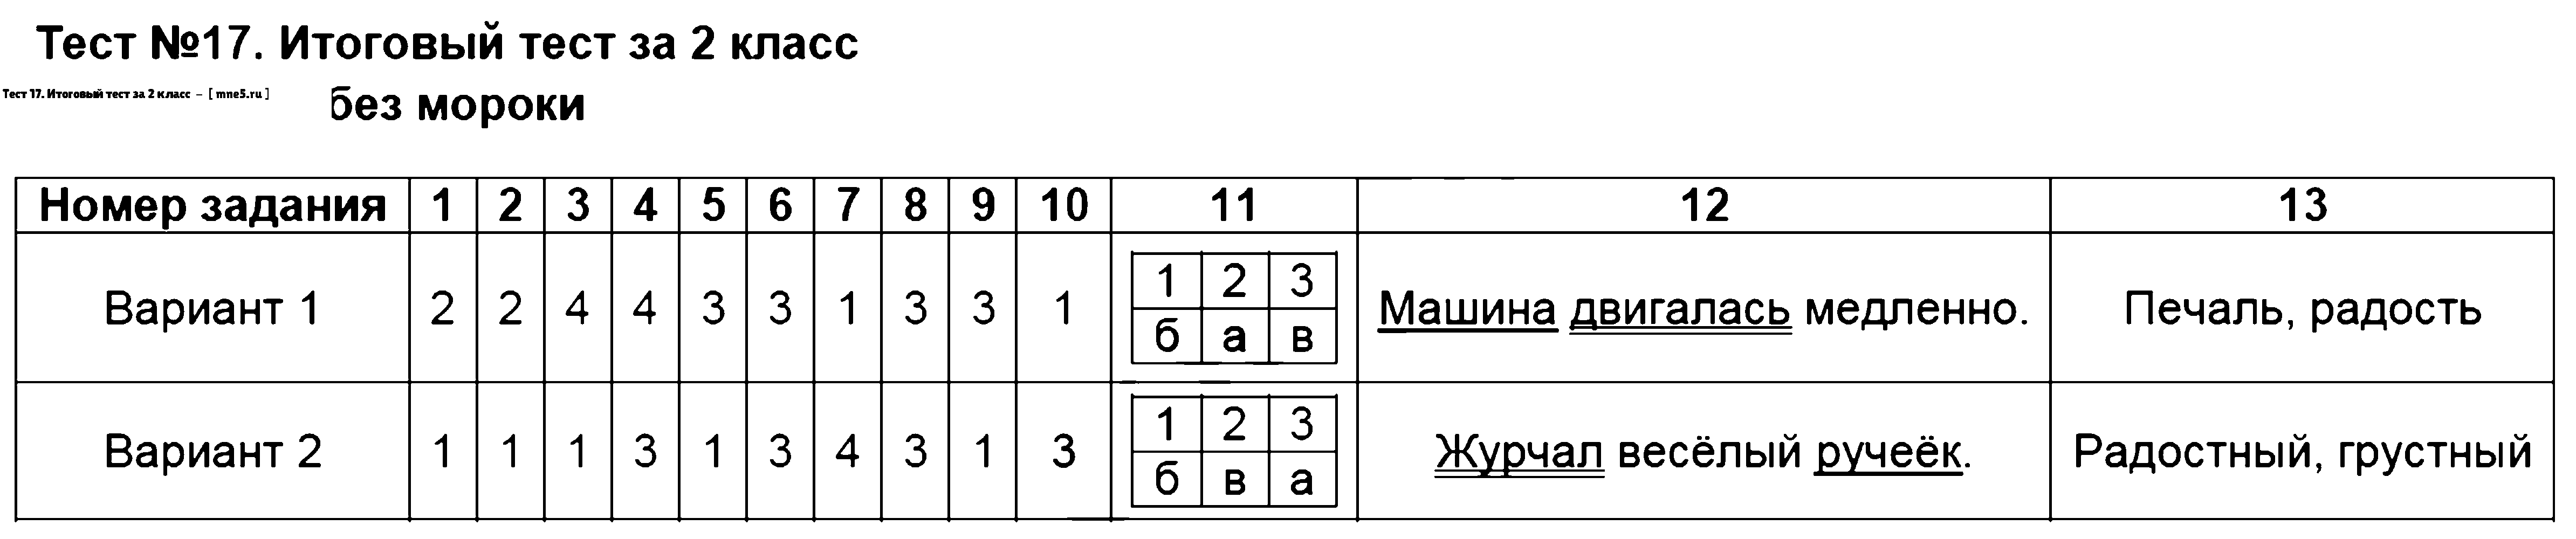 ГДЗ Русский язык 2 класс - Тест 17. Итоговый тест за 2 класс